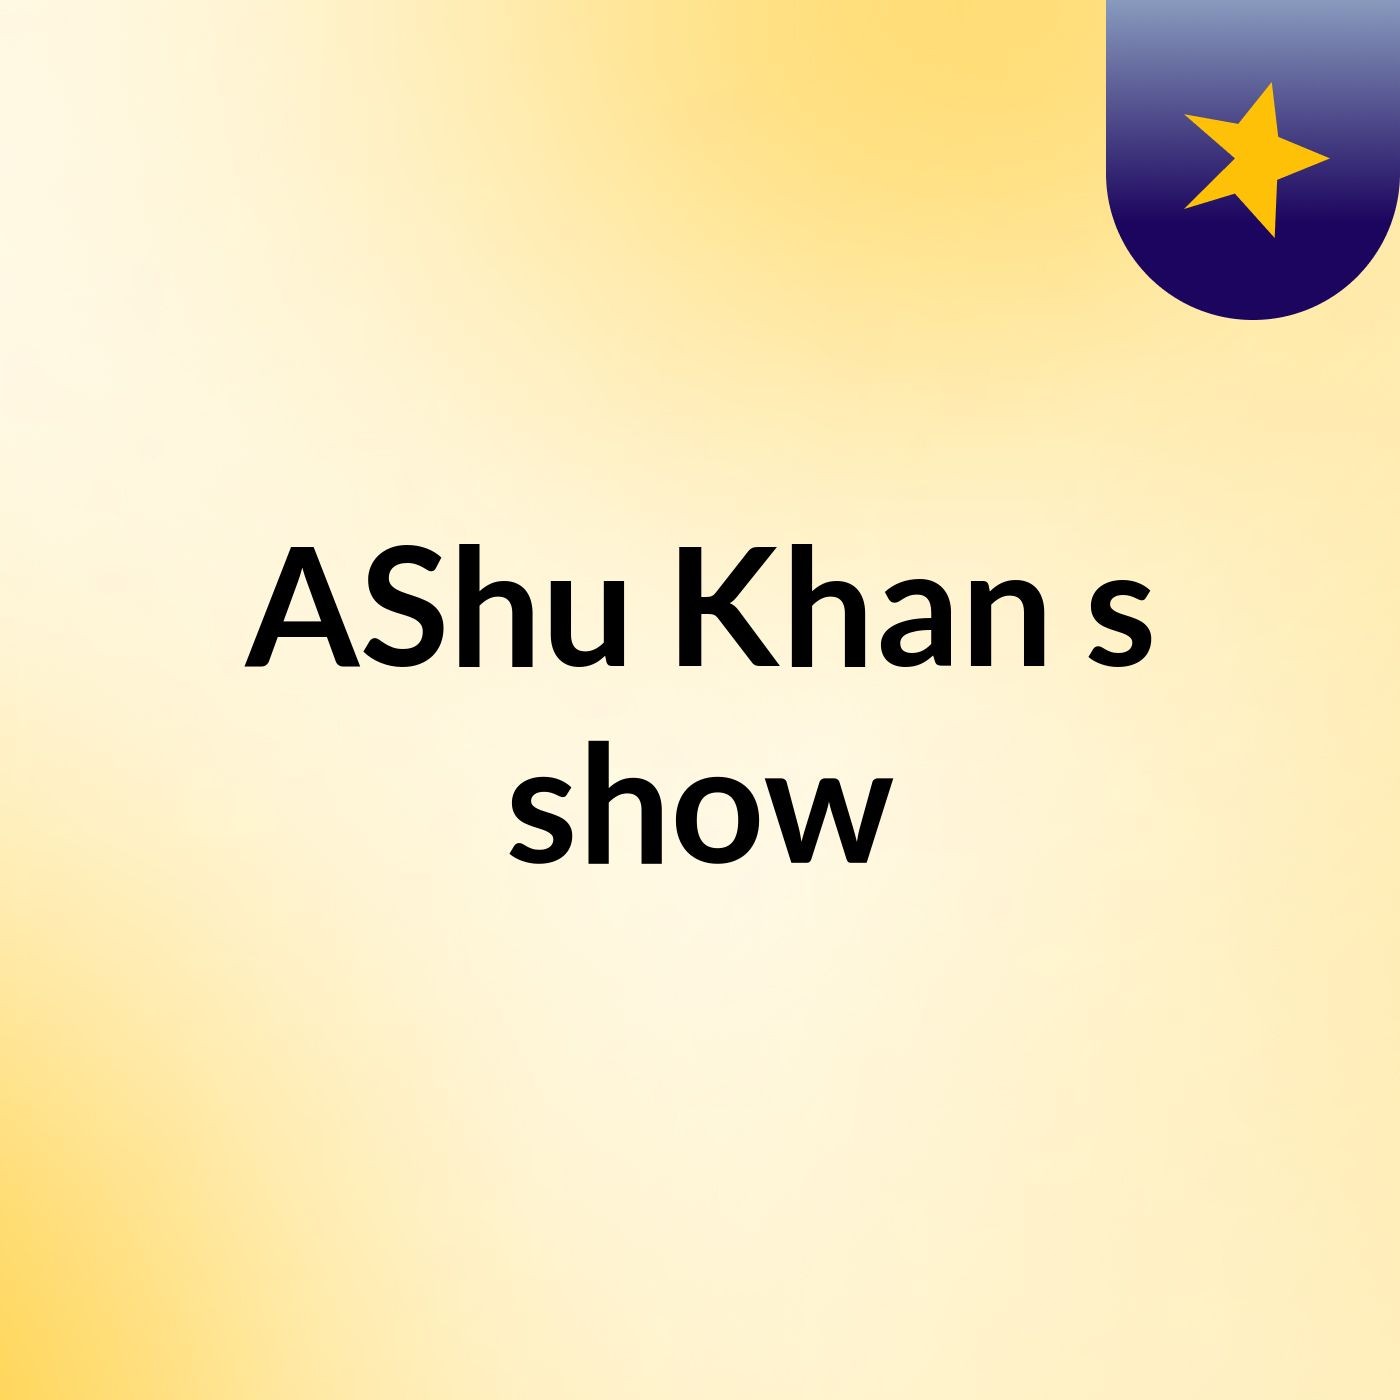 AShu Khan's show